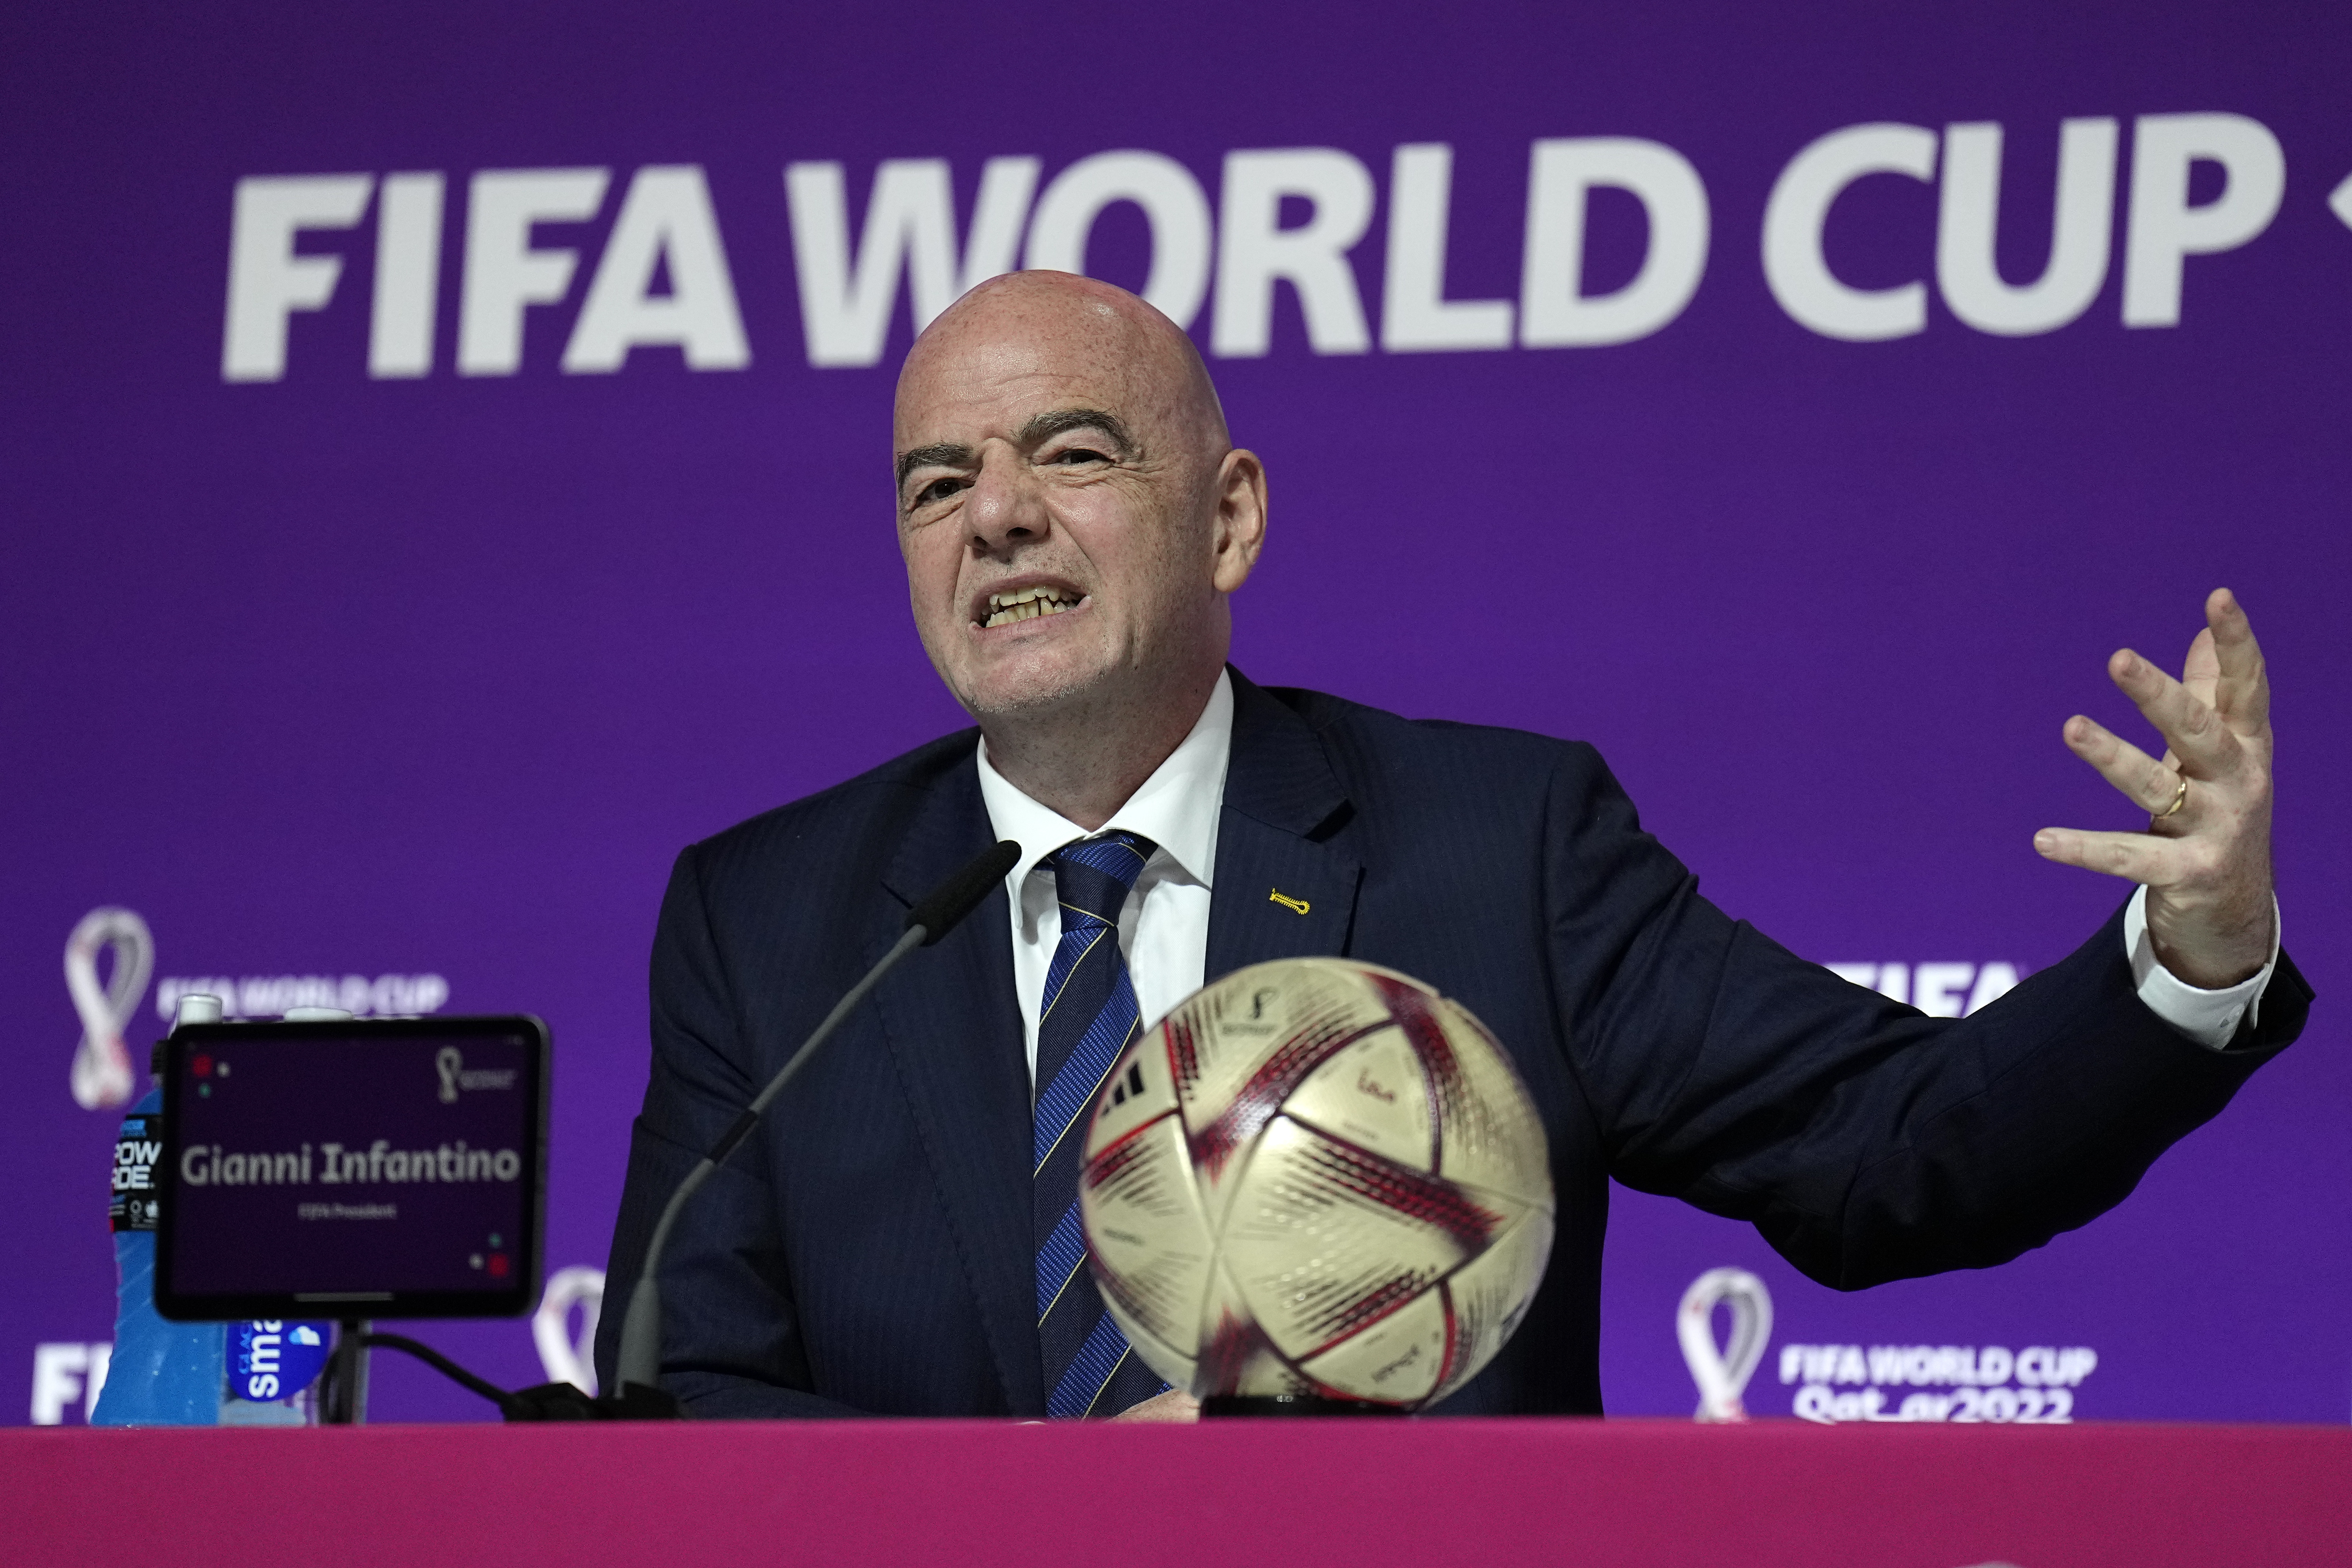 En foto del 16 de diciembre del 2022, el presidente de FIFA, Gianni Infantino, habla en una conferencia de prensa durante el Mundial de Qatar en Doha, Qatar. (AP Foto/Martin Meissner)